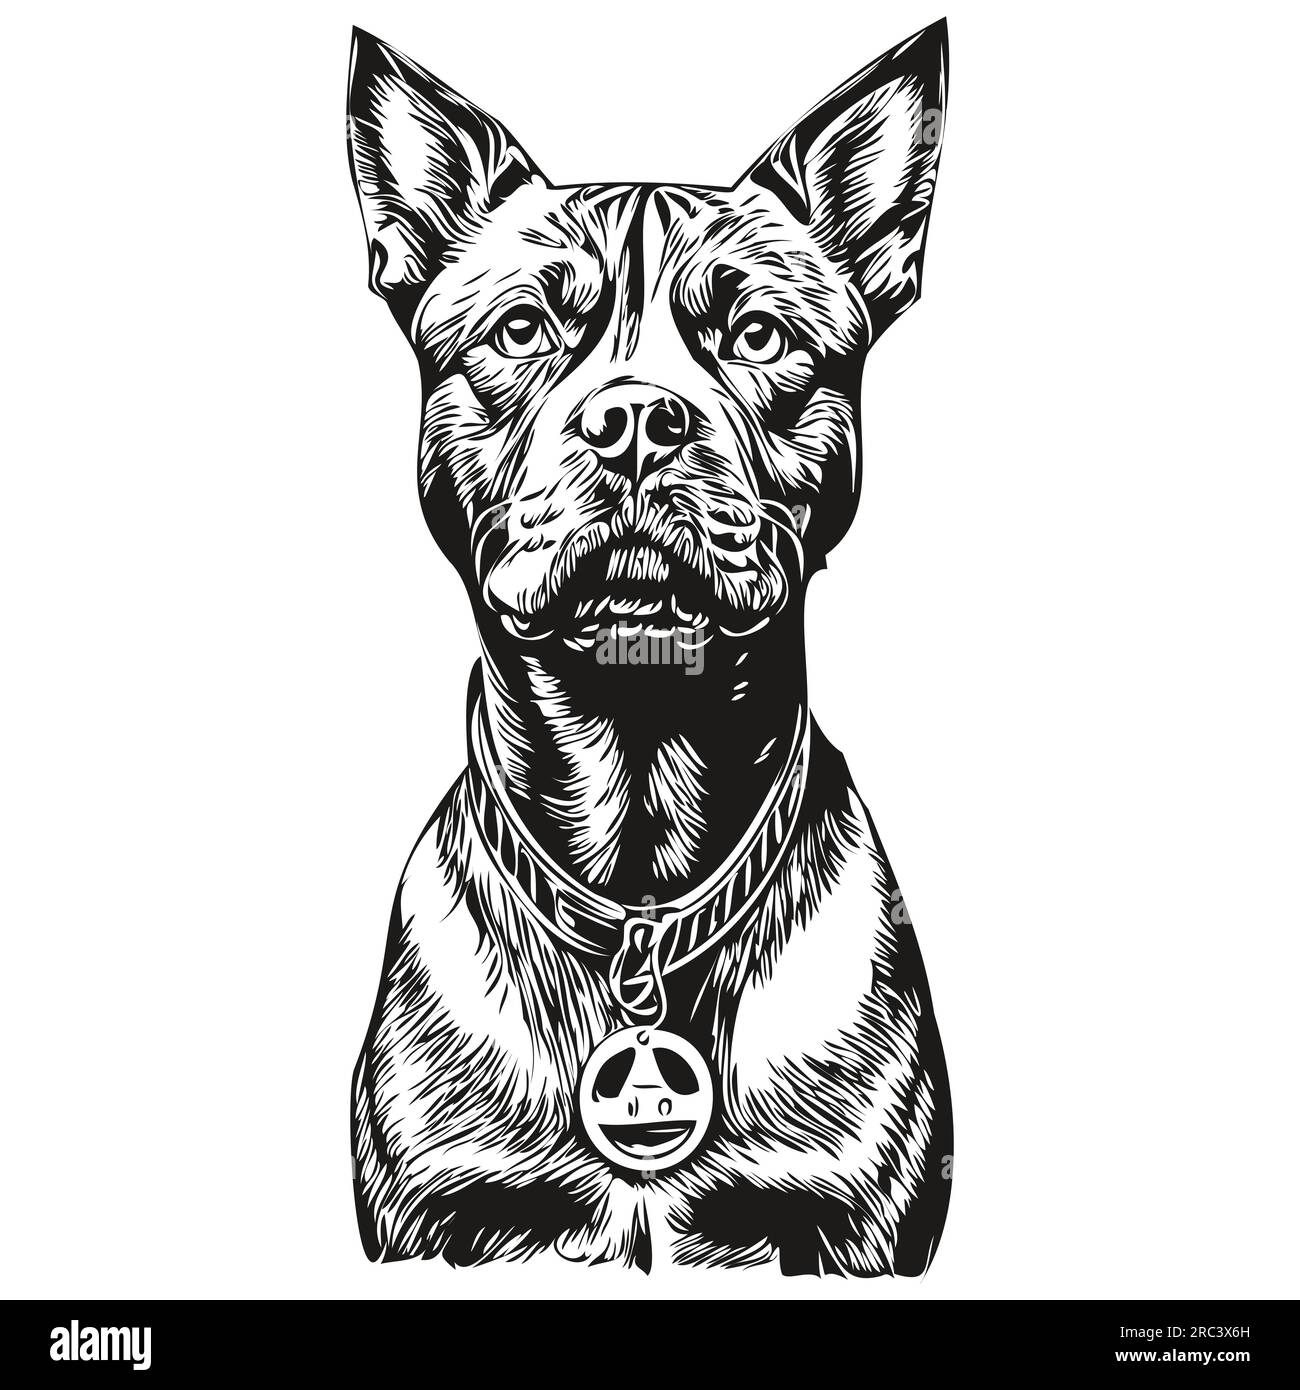 American Staffordshire Terrier chien dessin animé portrait d'encre de visage, dessin d'esquisse noir et blanc, tshirt imprimé animal de compagnie réaliste de race Illustration de Vecteur